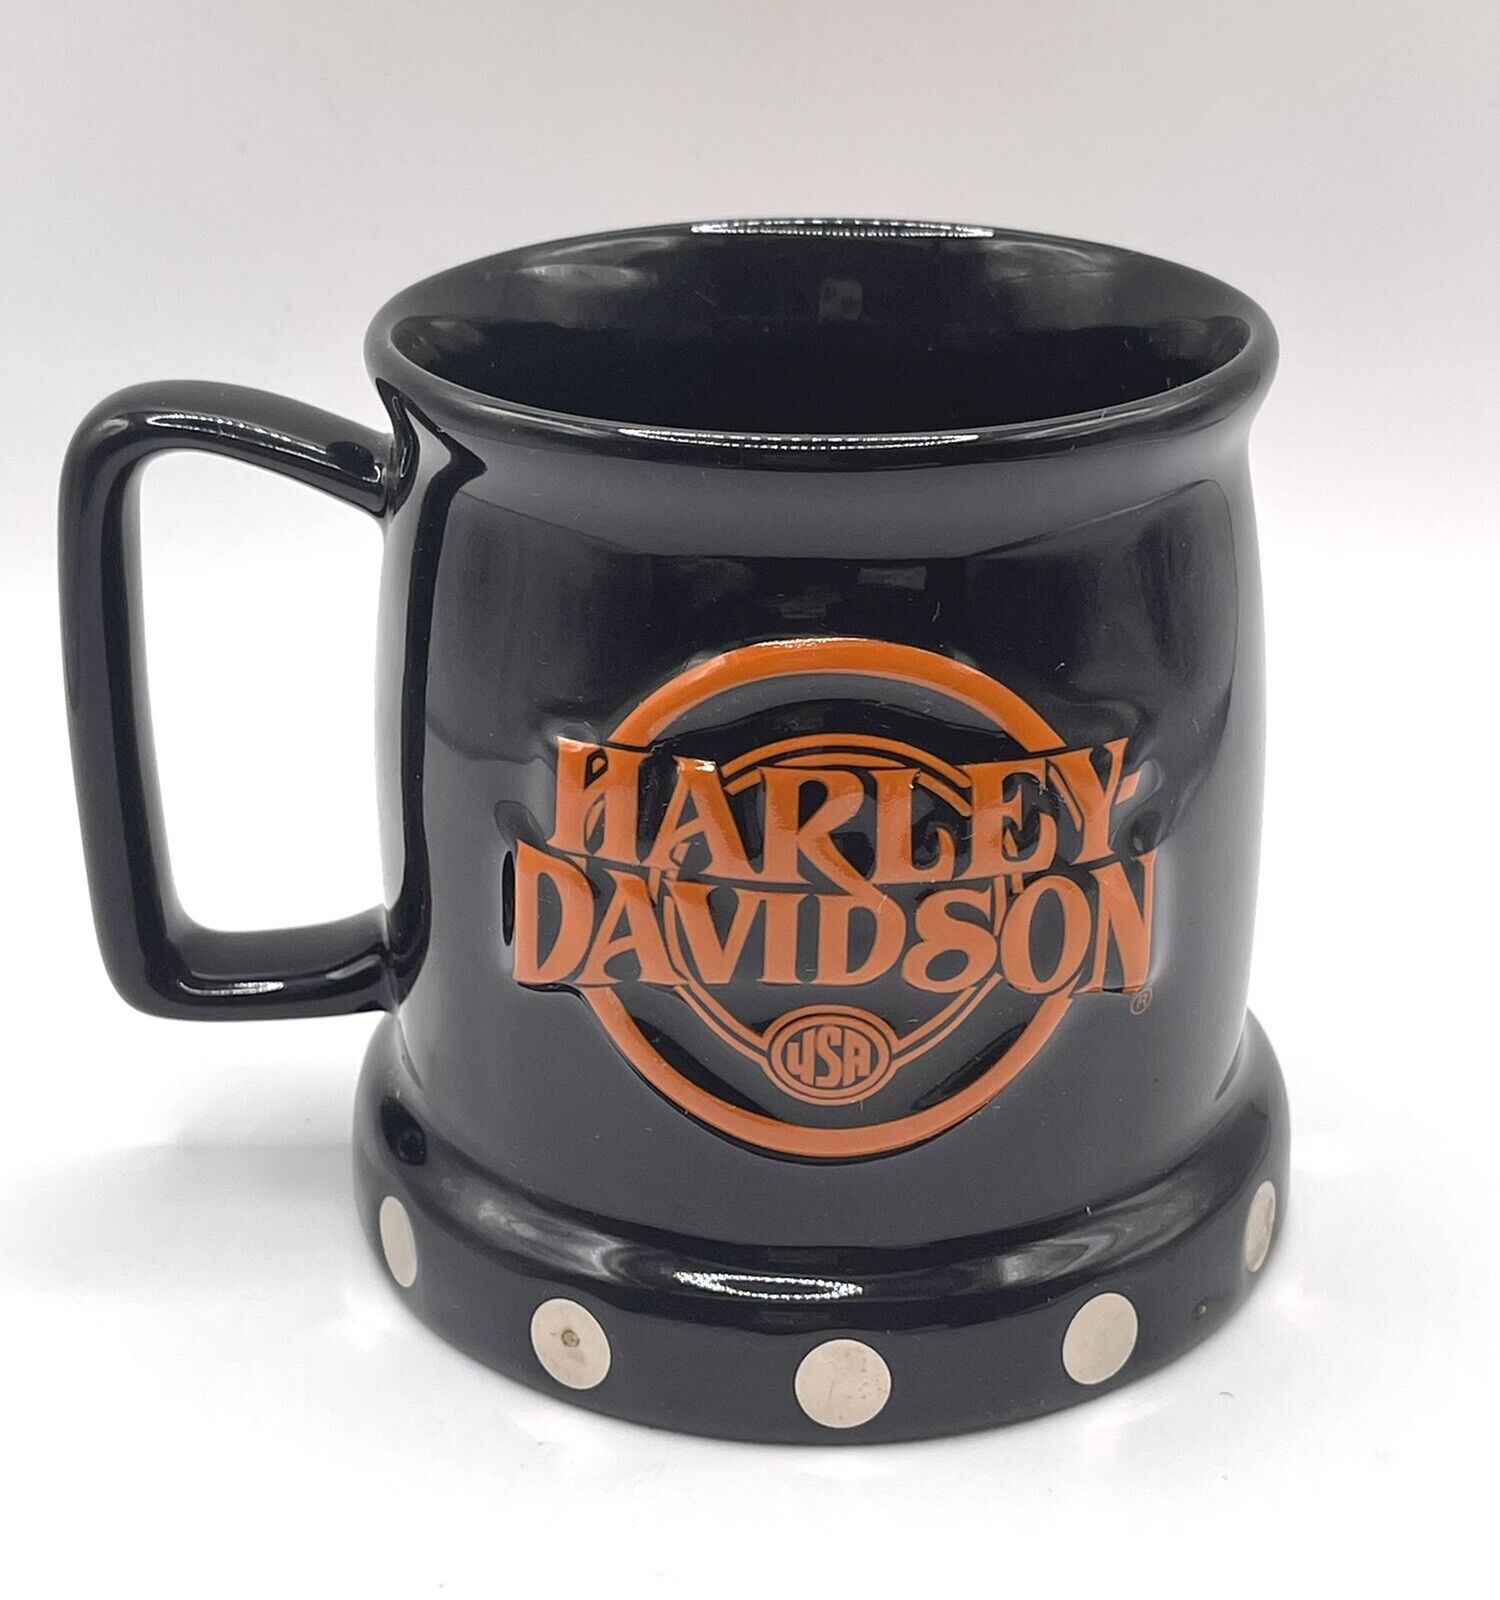 Harley Davidson Offical Licensed Coffee Mug 